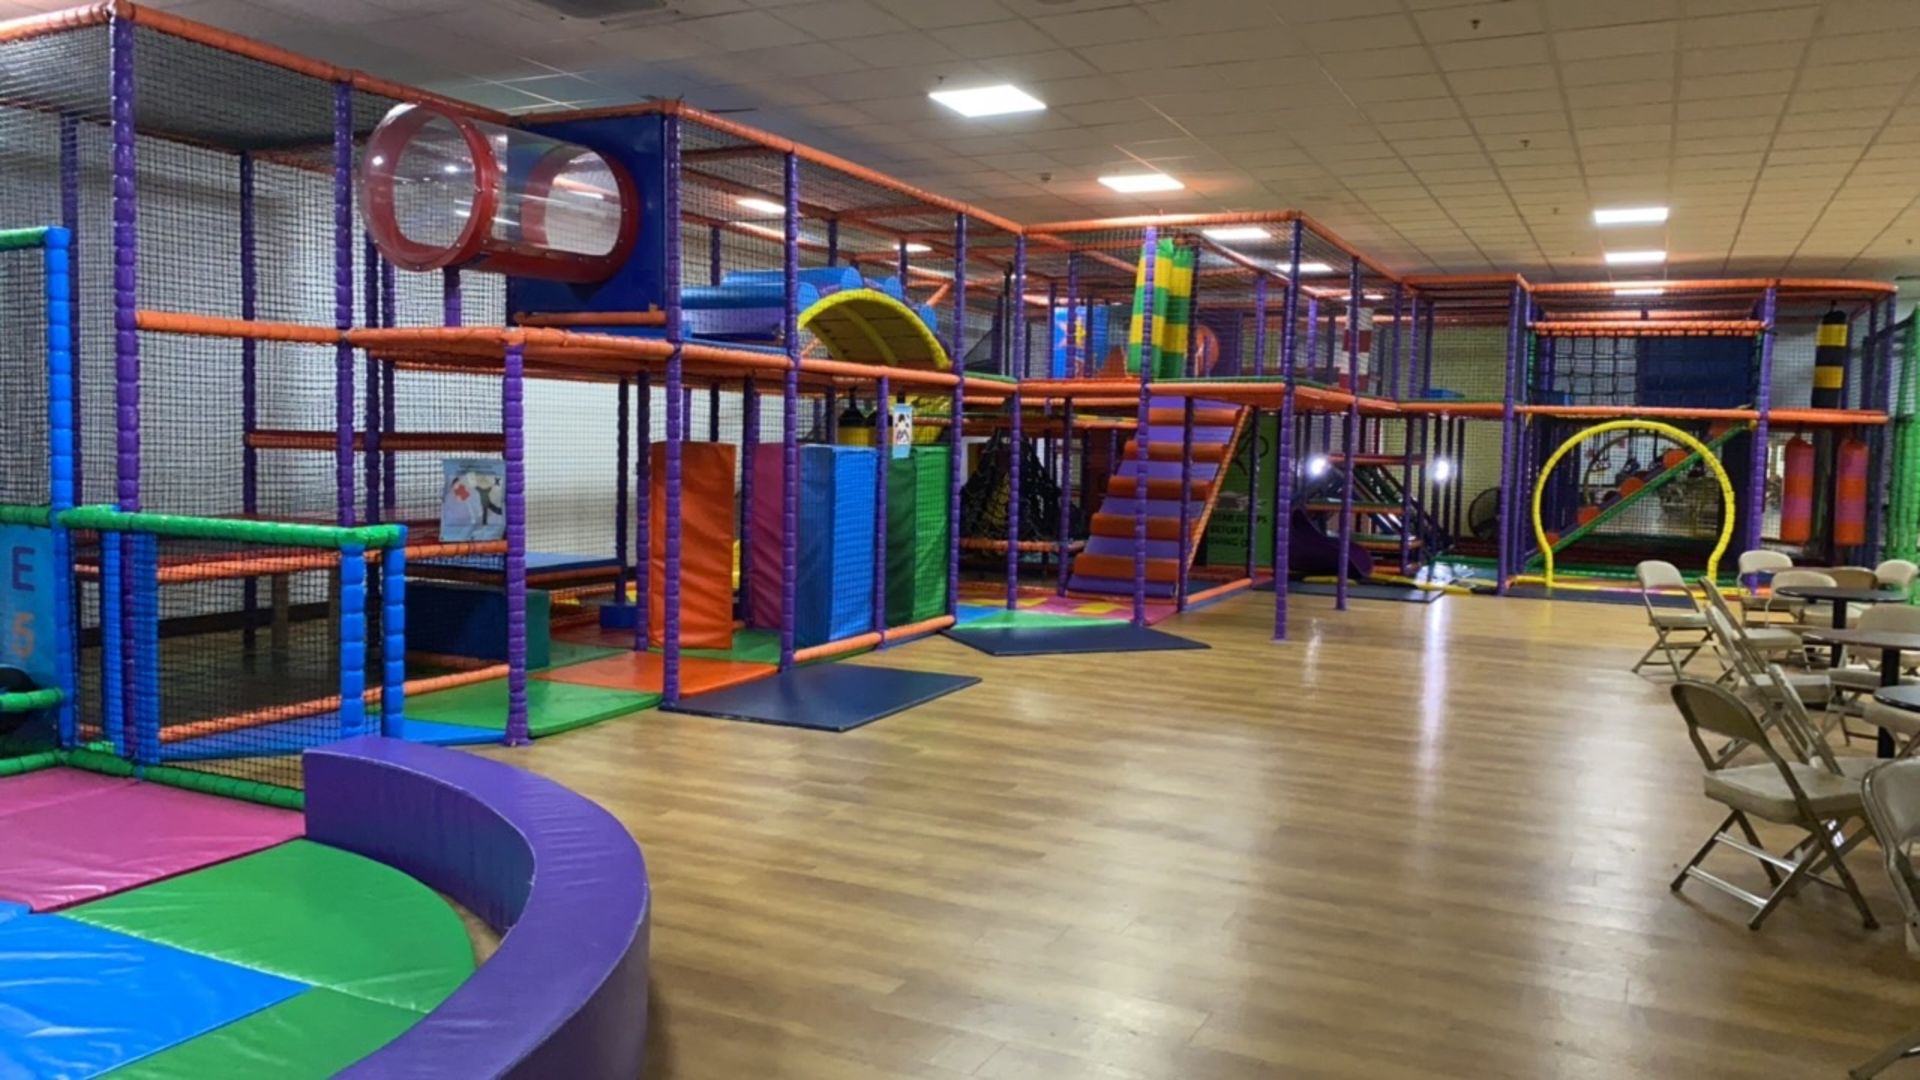 Large multi floor soft play area